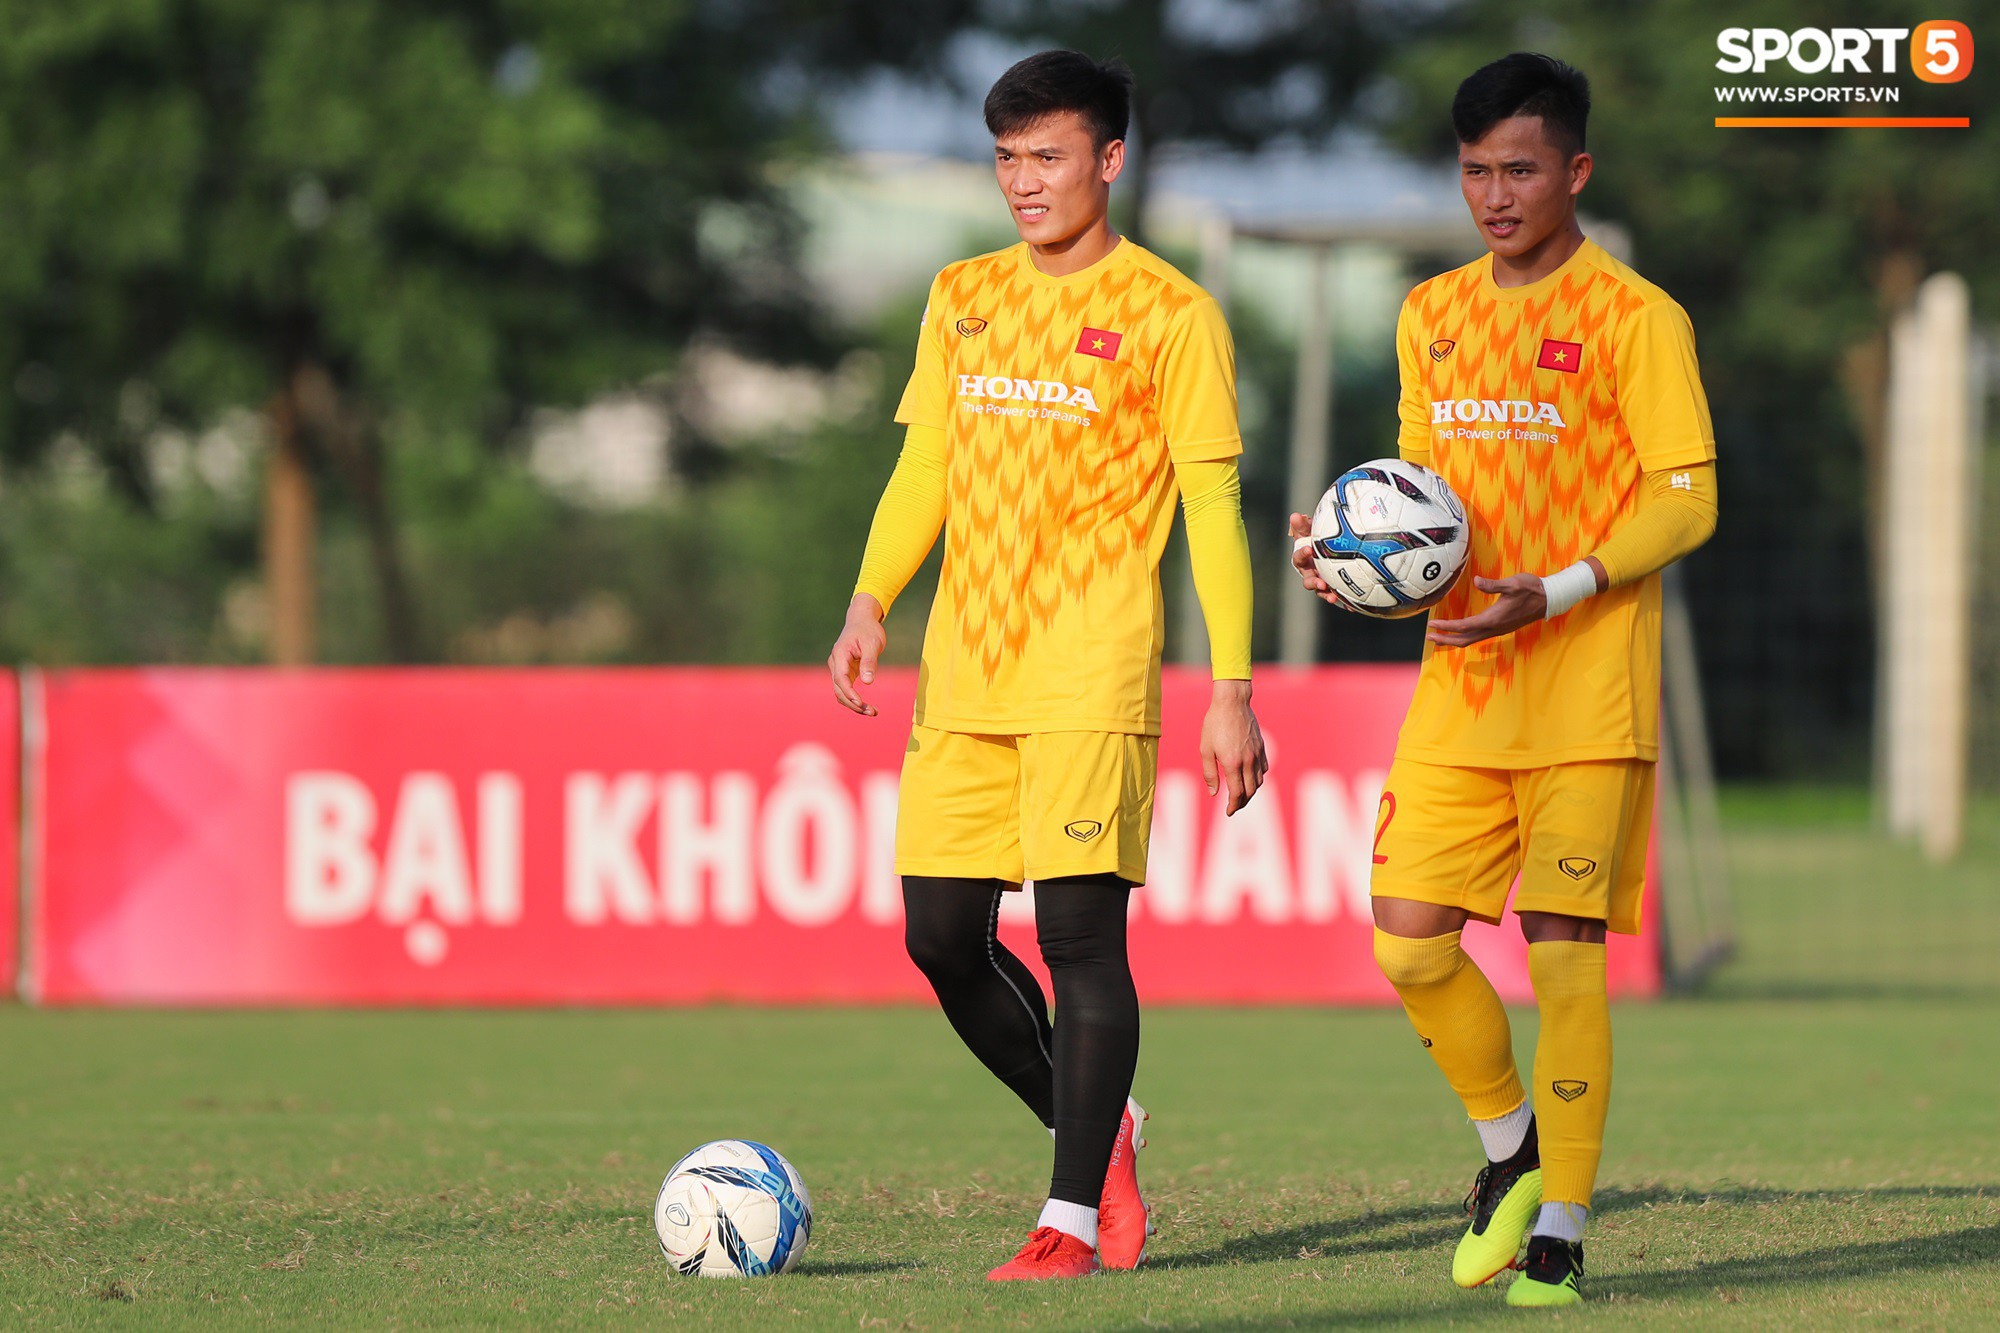 Bùi Tiến Dũng xuất hiện với cổ tay băng bó, trầm tư làm khán giả trong trận đấu tập của U23 Việt Nam - Ảnh 6.